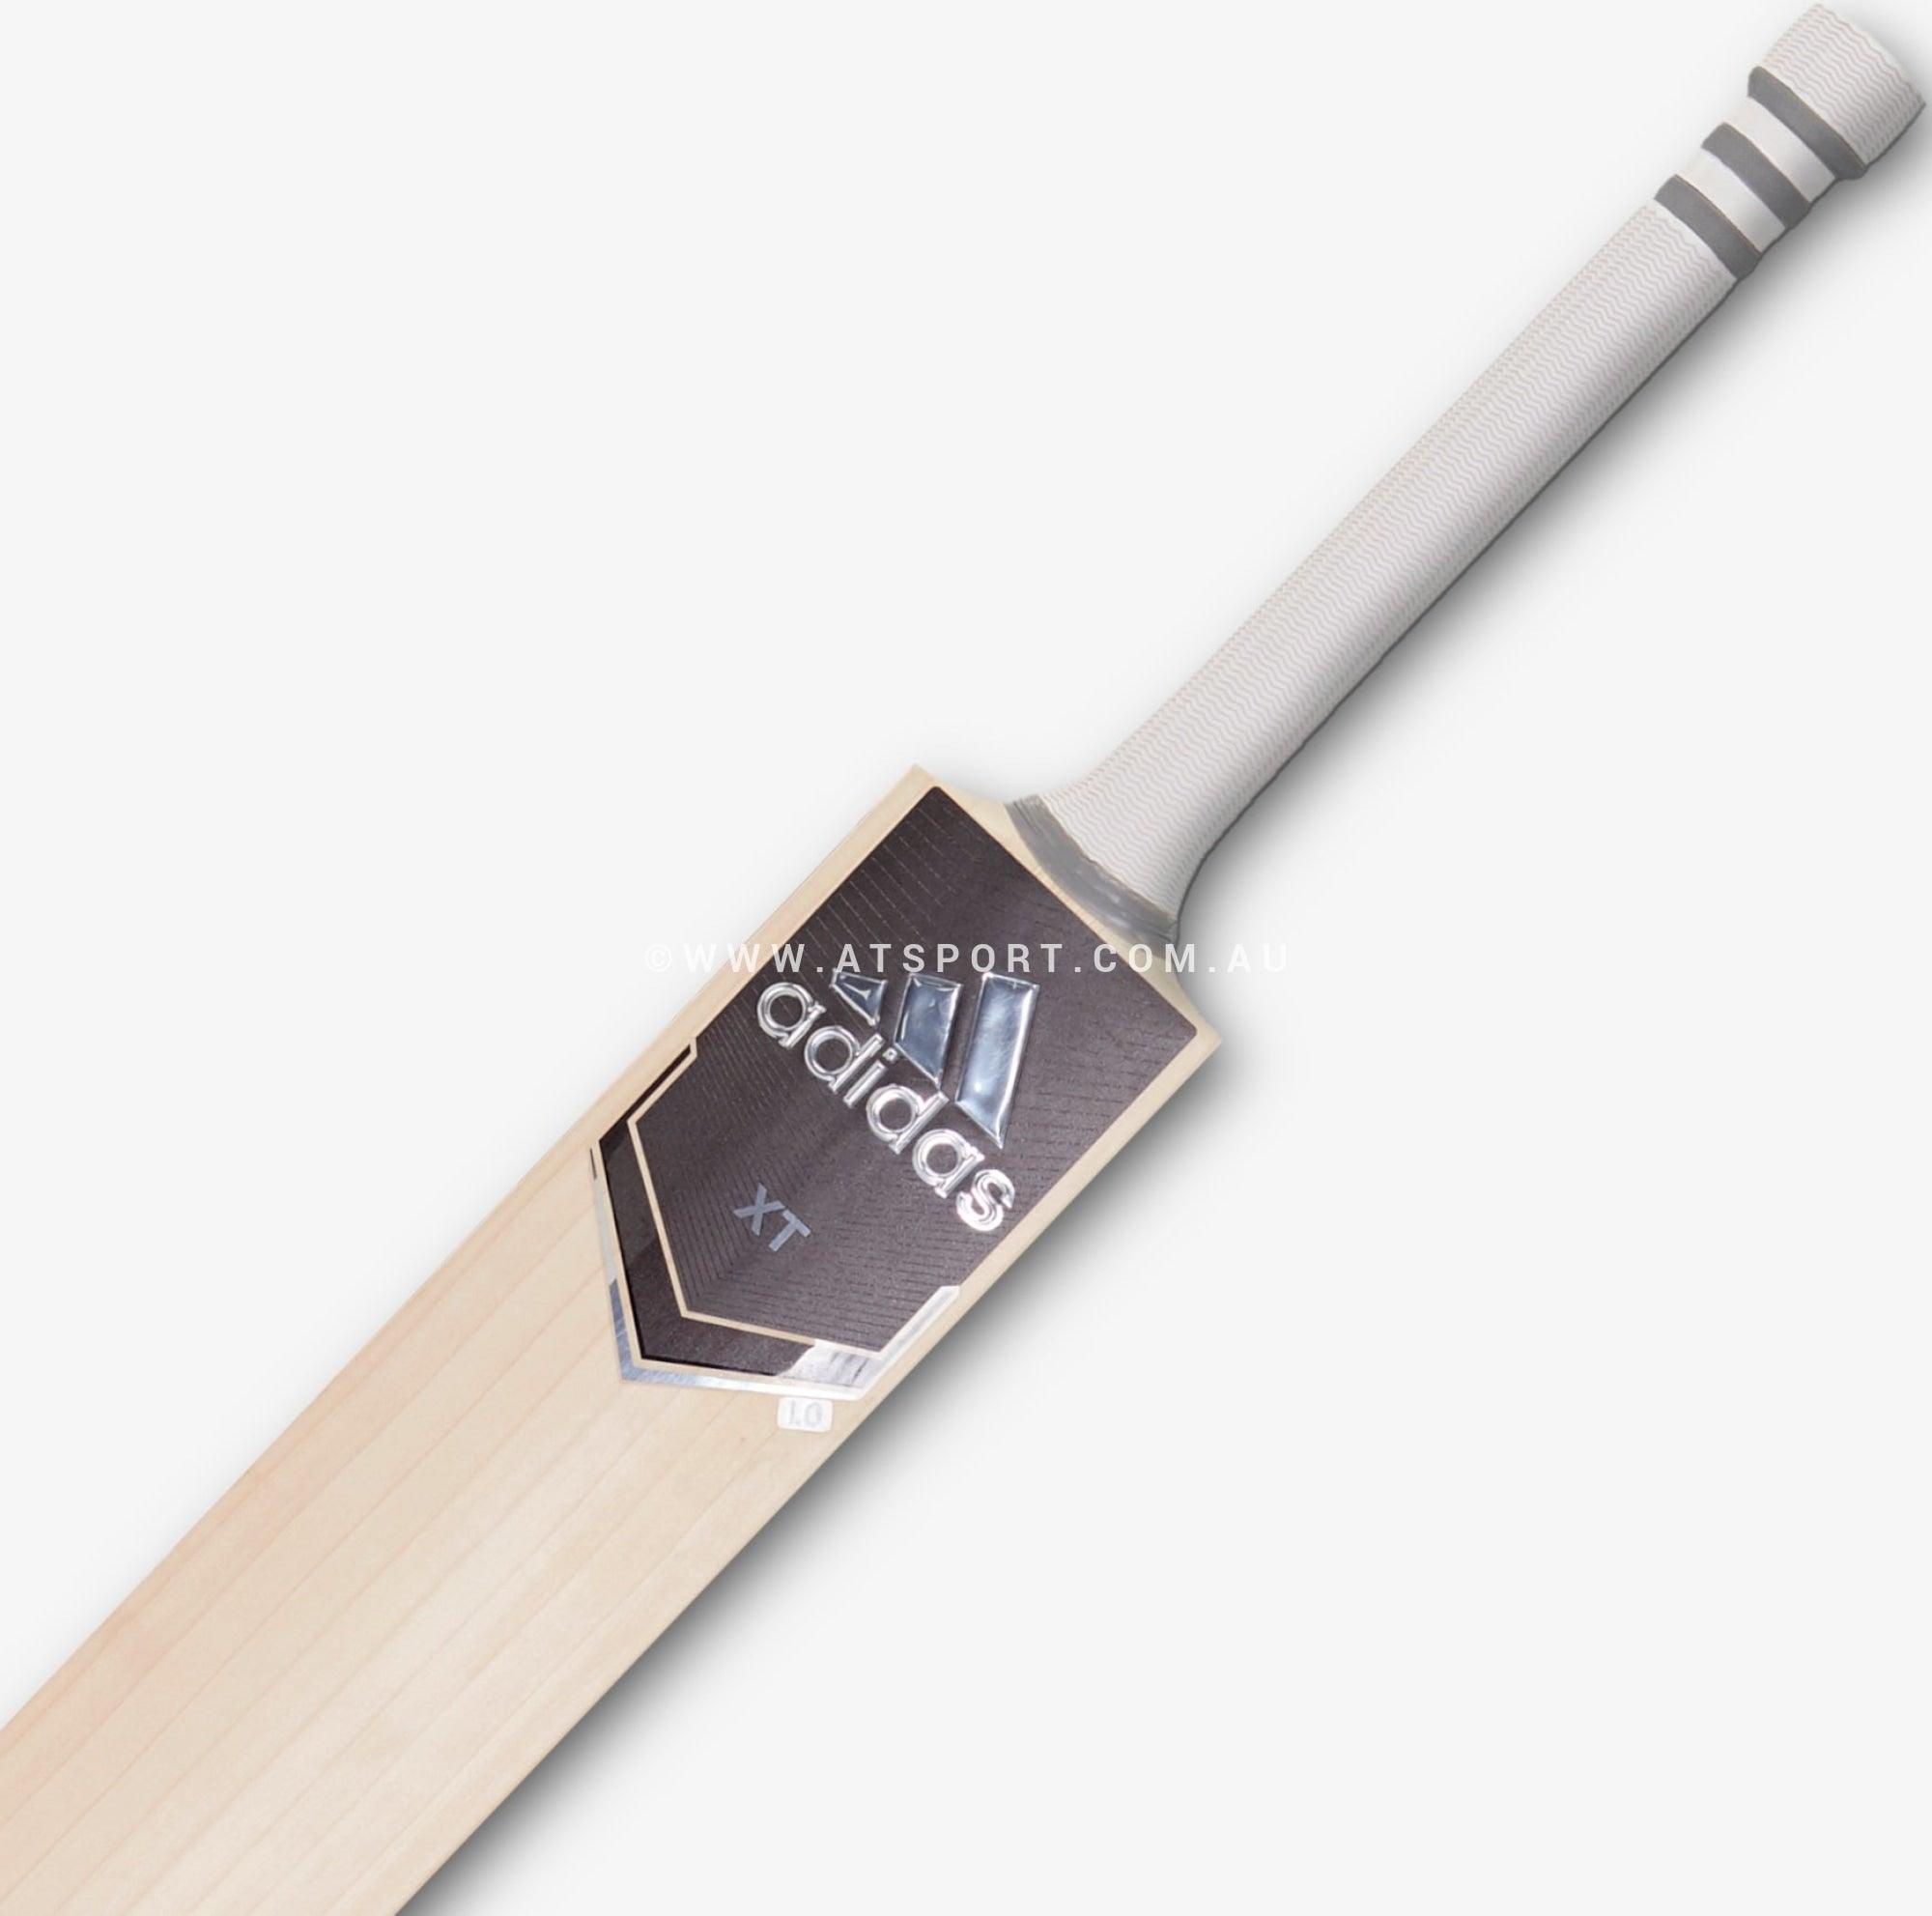 Adidas XT Grey 5.0 English Willow Cricket Bat - JUNIOR - AT Sports